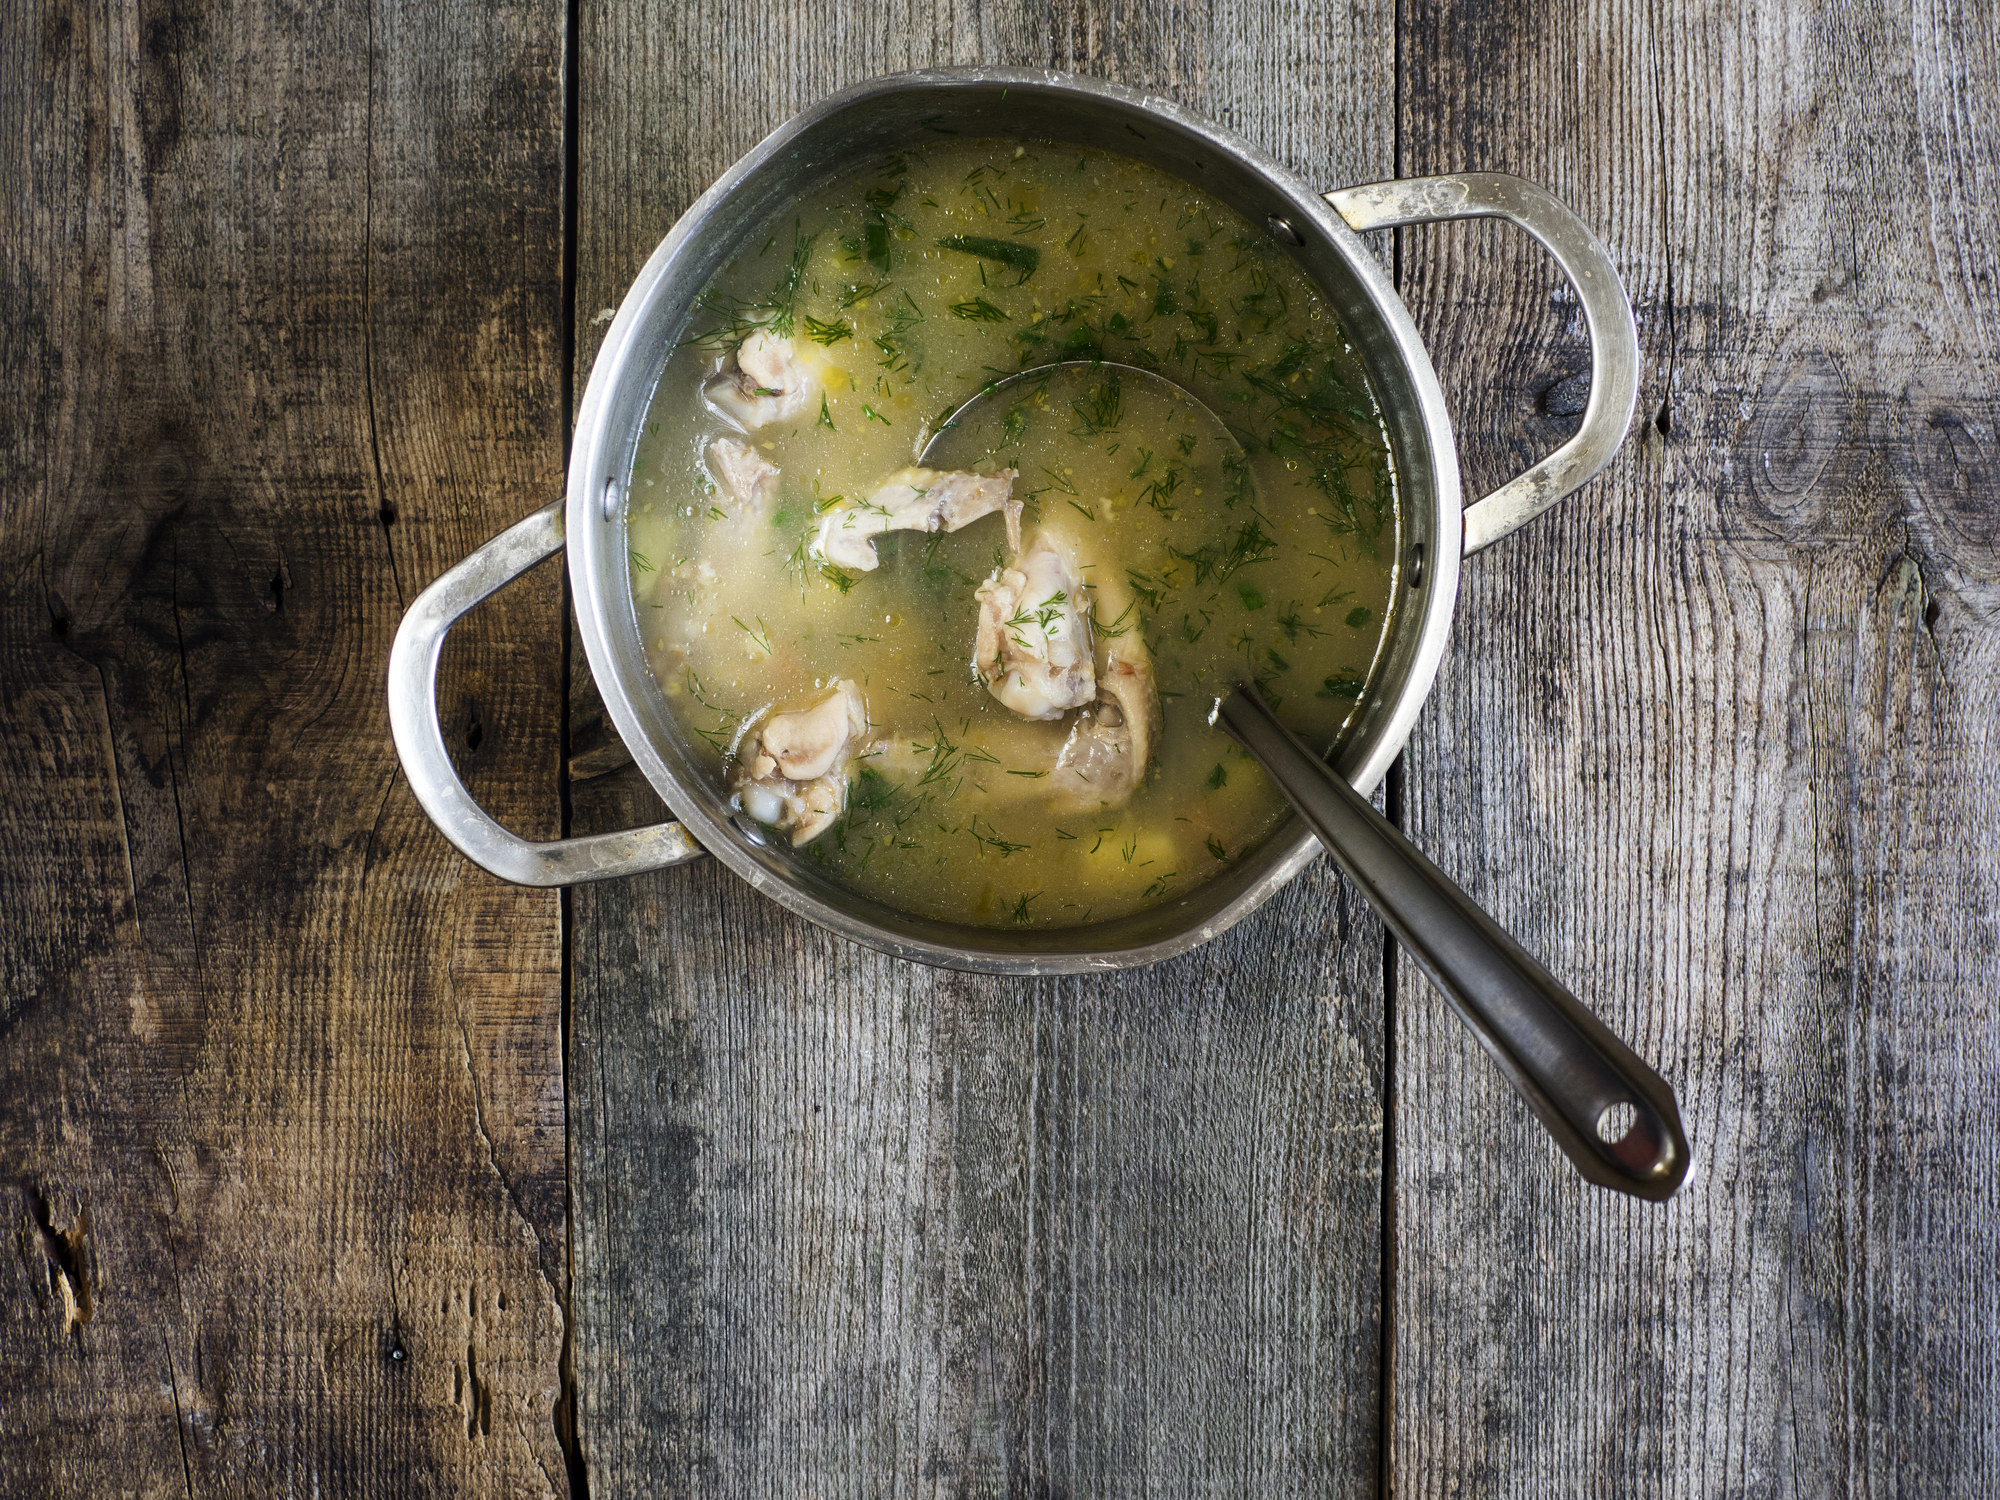 A pot of homemade chicken soup.